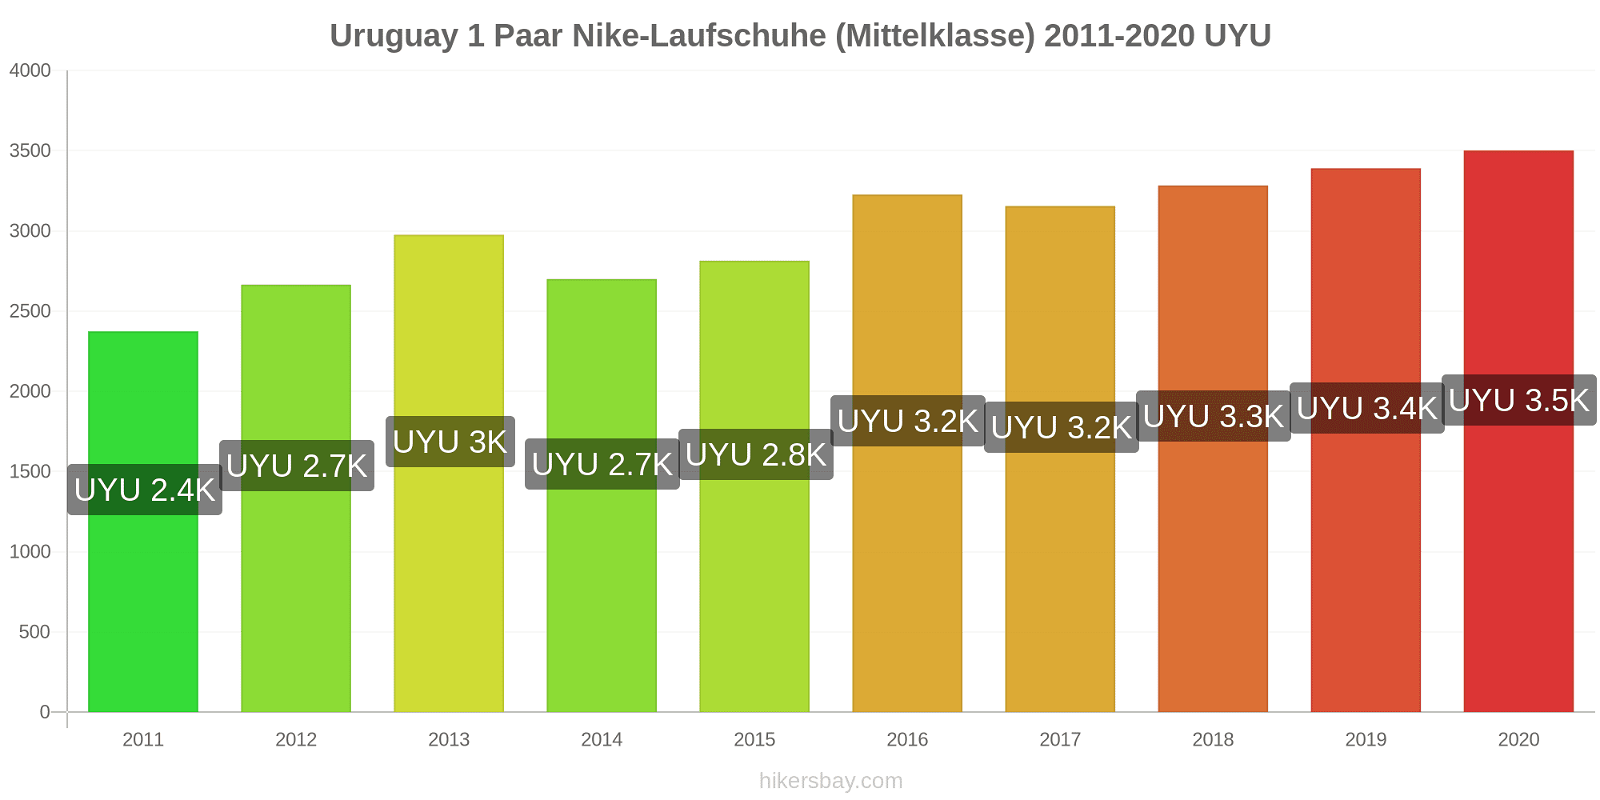 Uruguay Preisänderungen 1 Paar Nike Laufschuhe (Mittelklasse) hikersbay.com